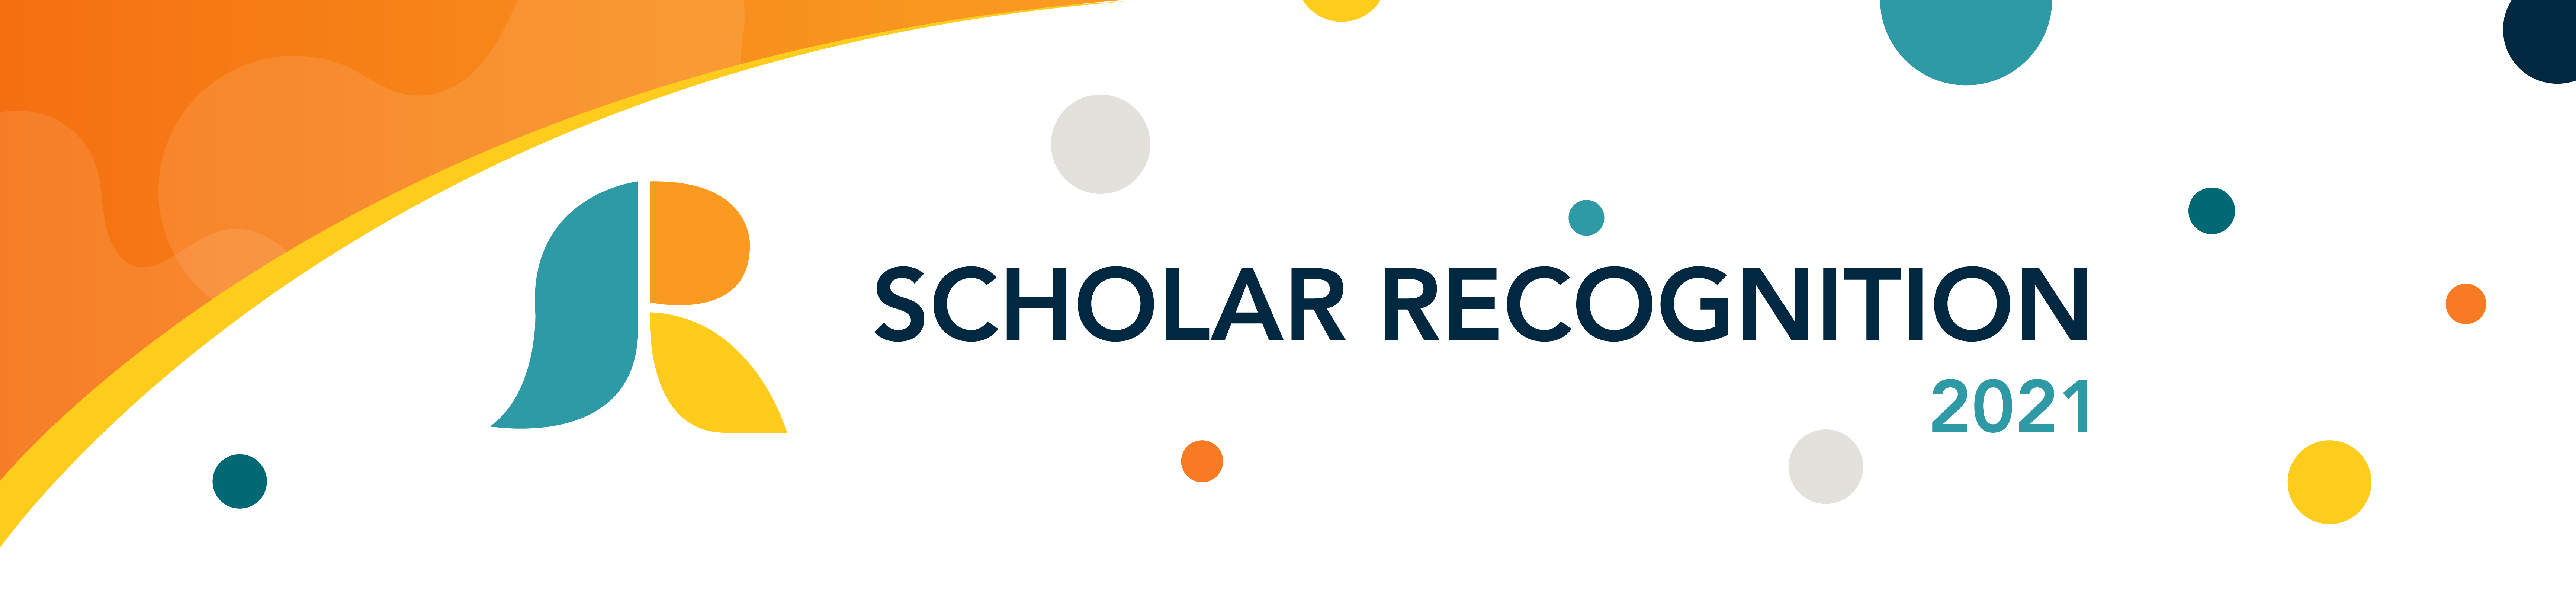 Scholar Recognition 2021